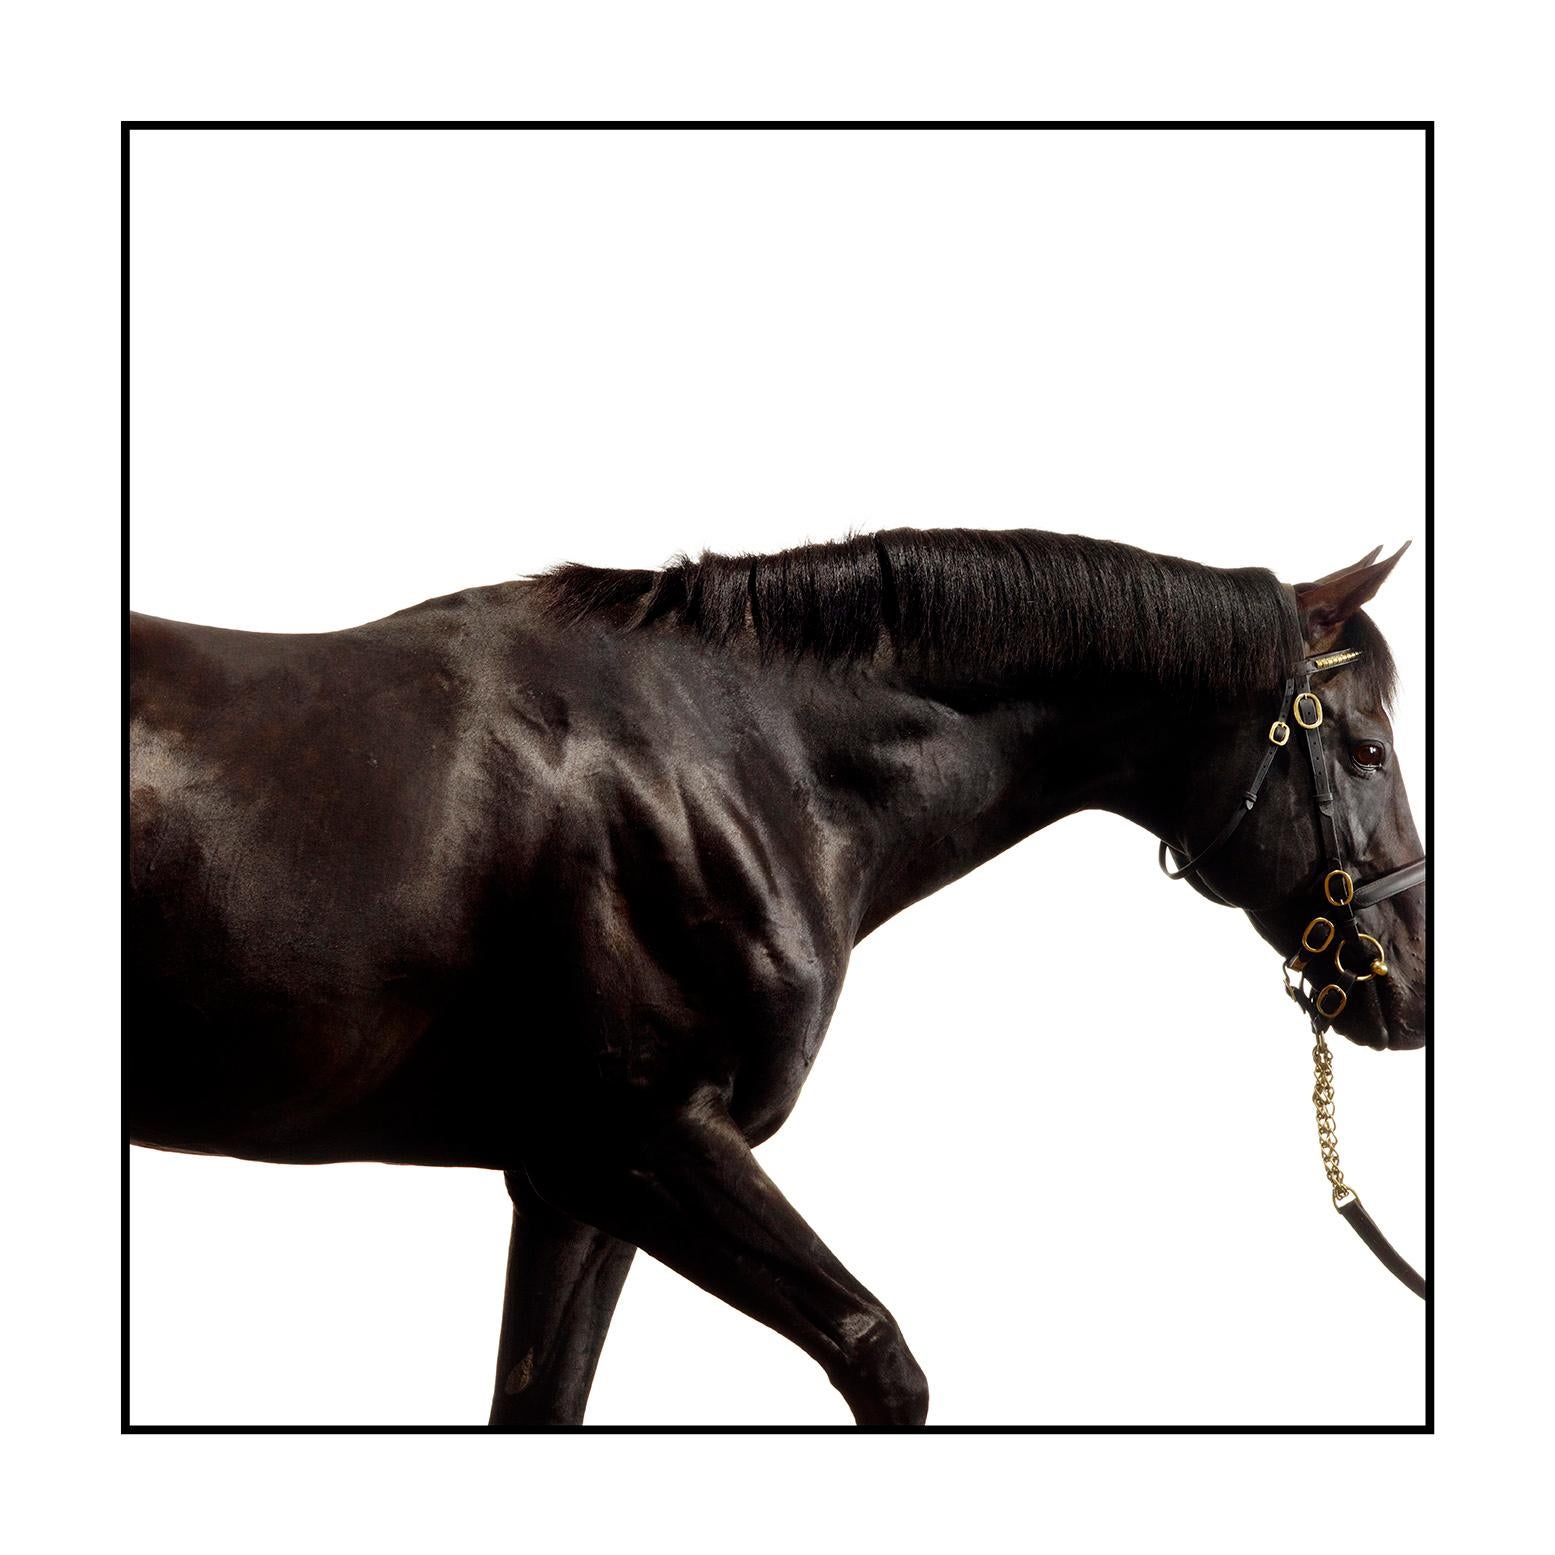 Cape Cross (13. März 1994 - 21. April 2017) war ein in Irland gezüchtetes Vollblutrennpferd. Er ist ein Sohn des July-Cup-Siegers Green Desert und der Cheveley Park Stakes-Siegerin Park Appeal, die 1984 die Siegerin der zweijährigen Stuten in